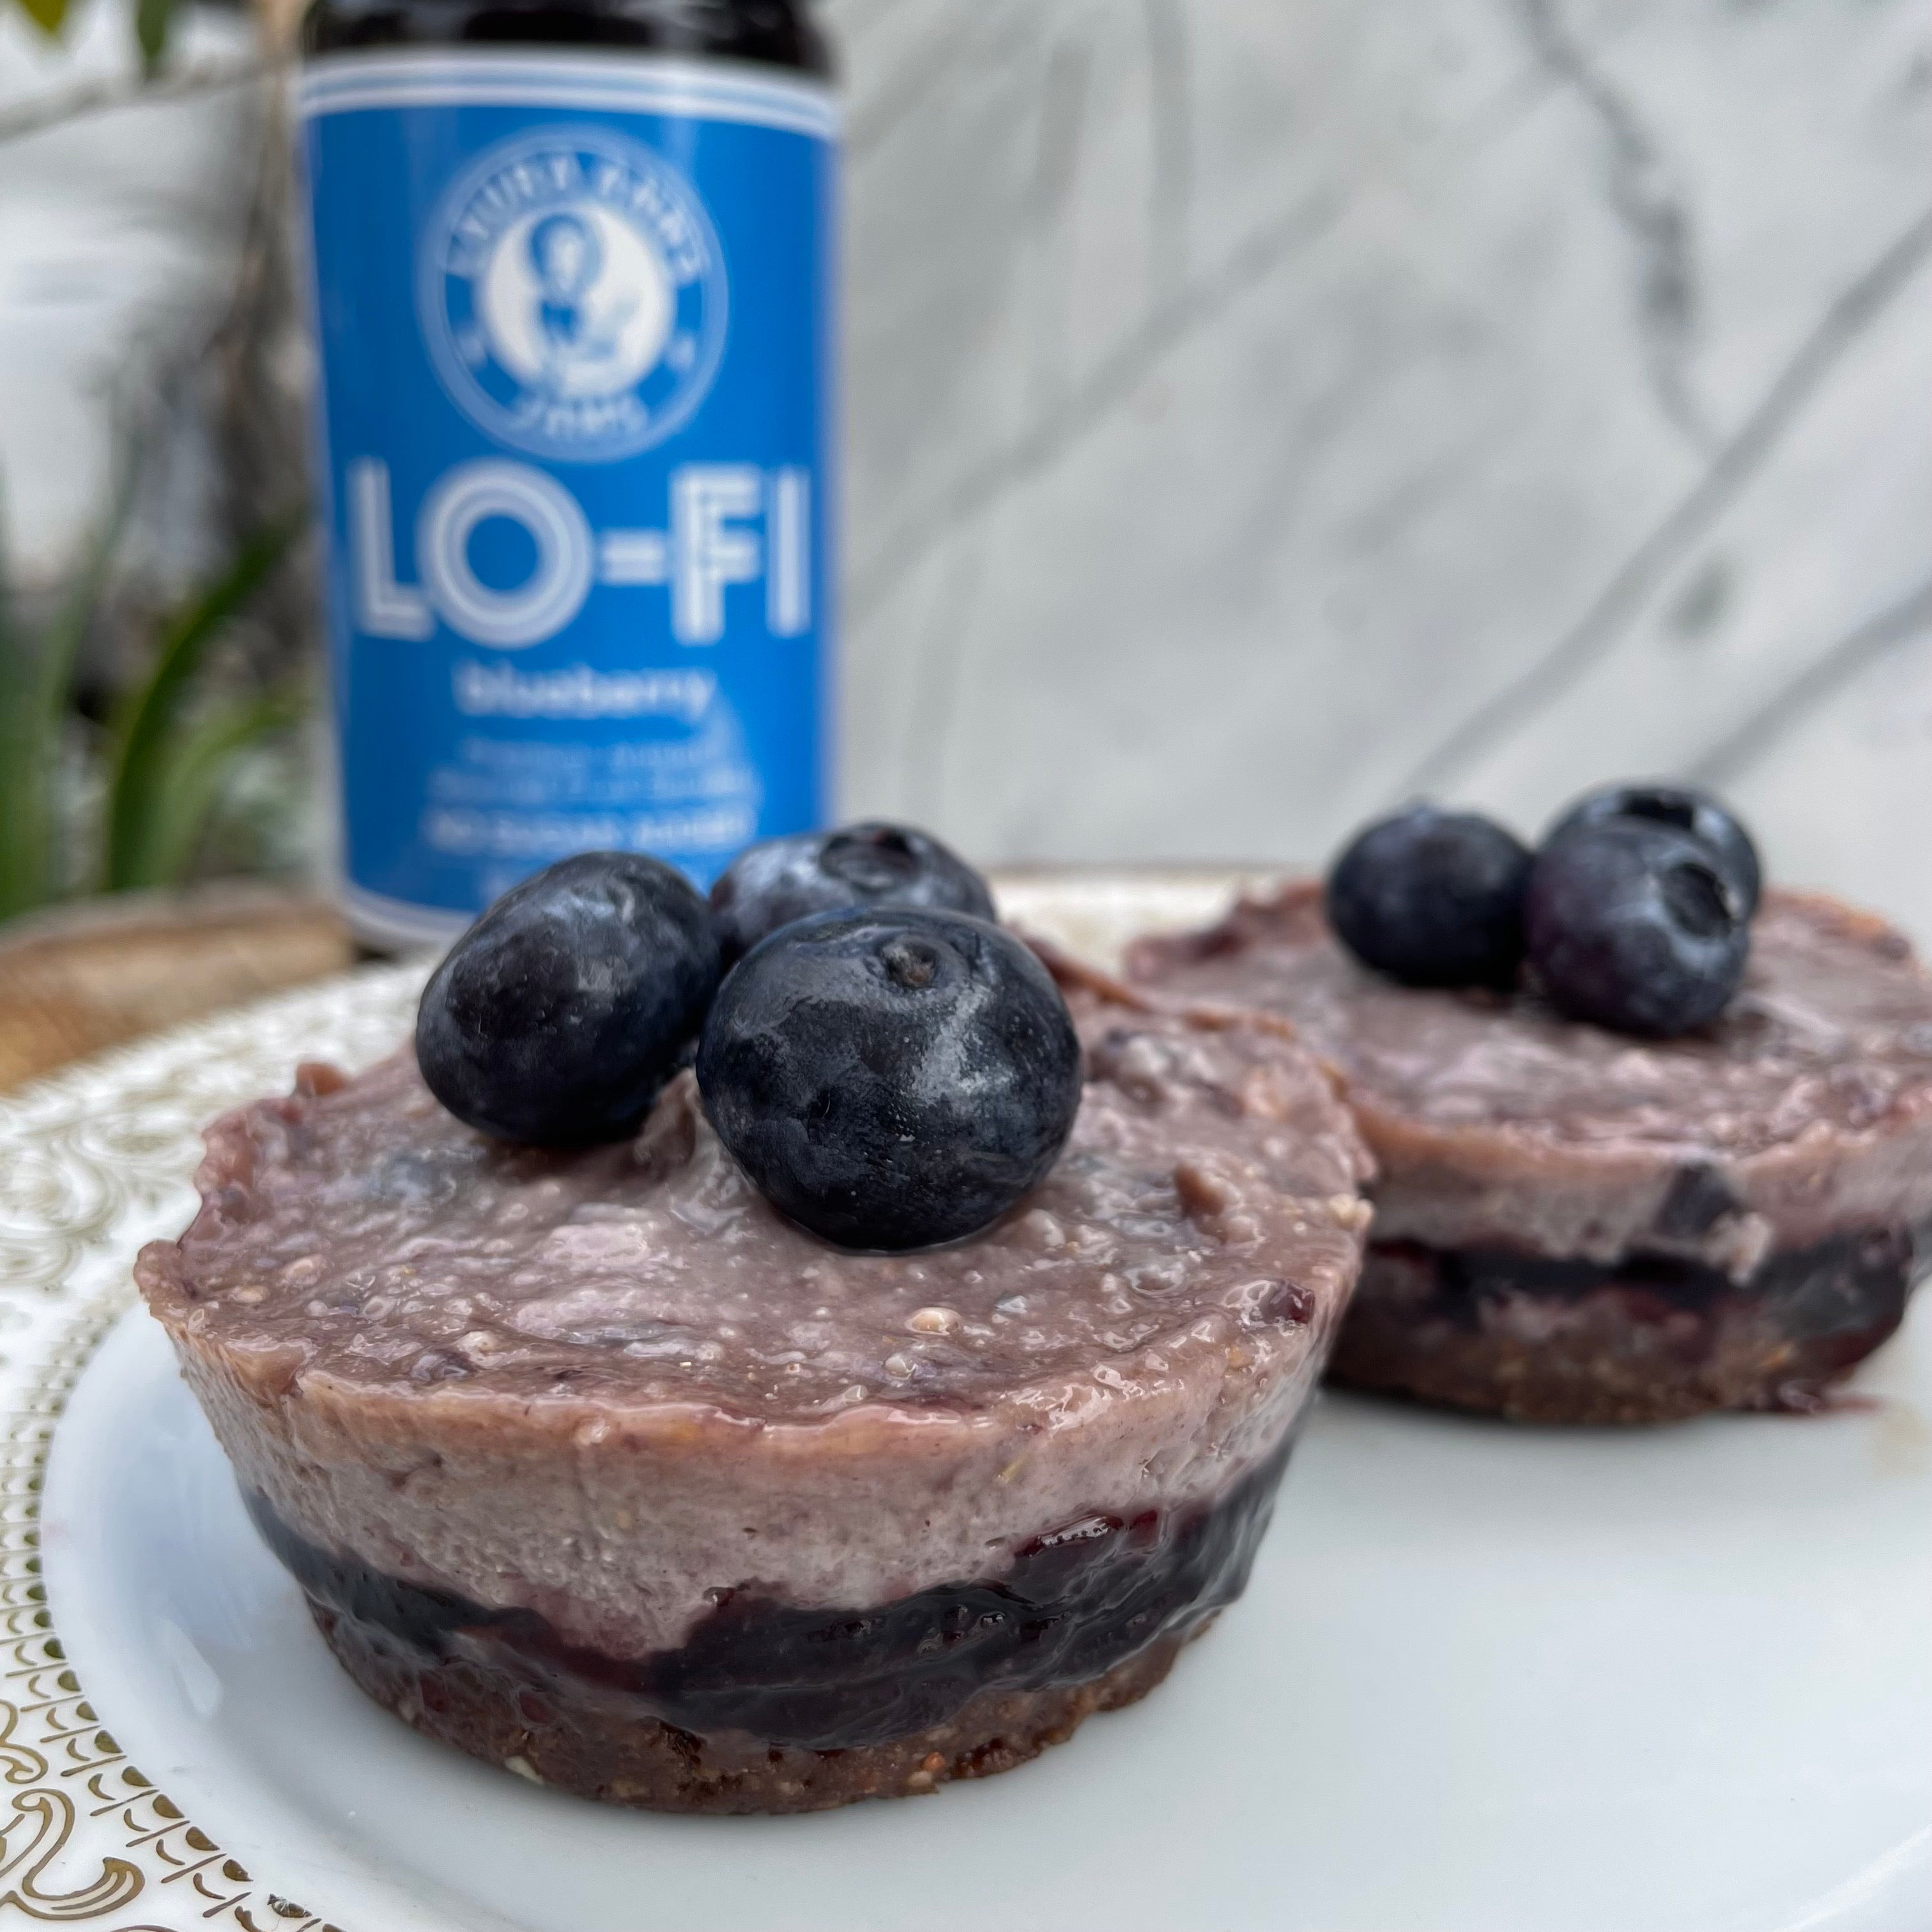 Lo-FI Mini Blueberry Cashew Cheesecake : Vegan NO BAKE Raw No Sugar